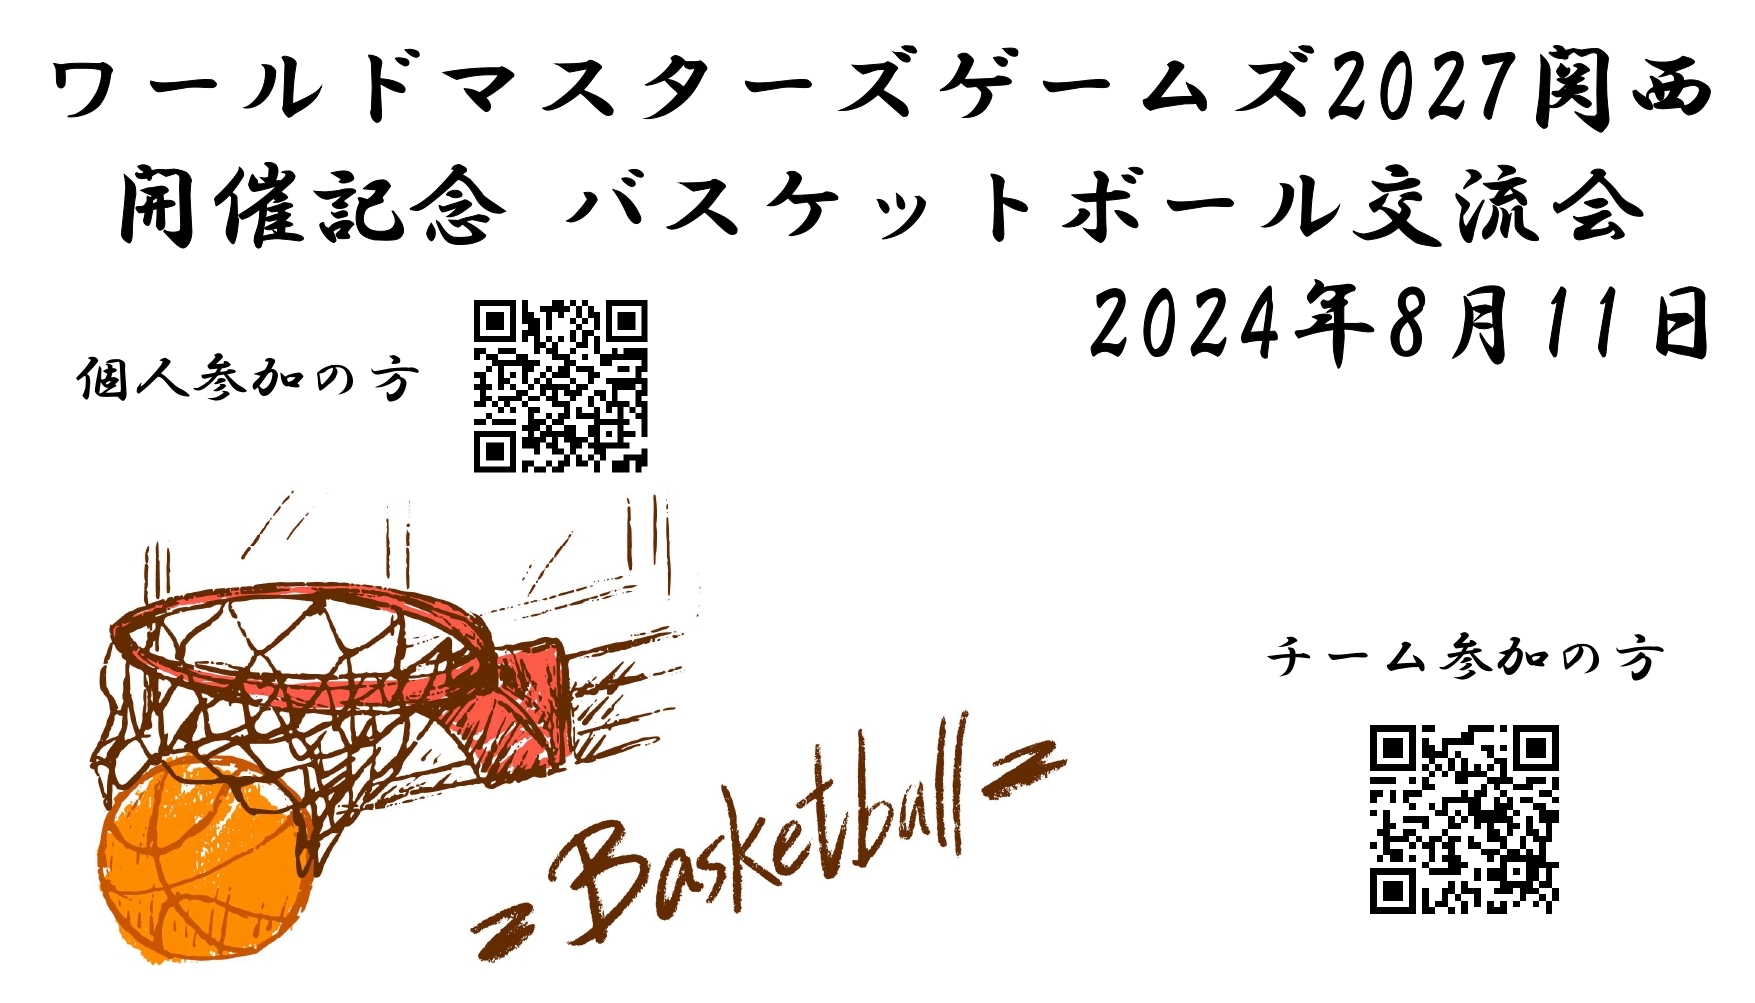 ワールドマスターズ2027関西 開催記念 バスケットボール交流会